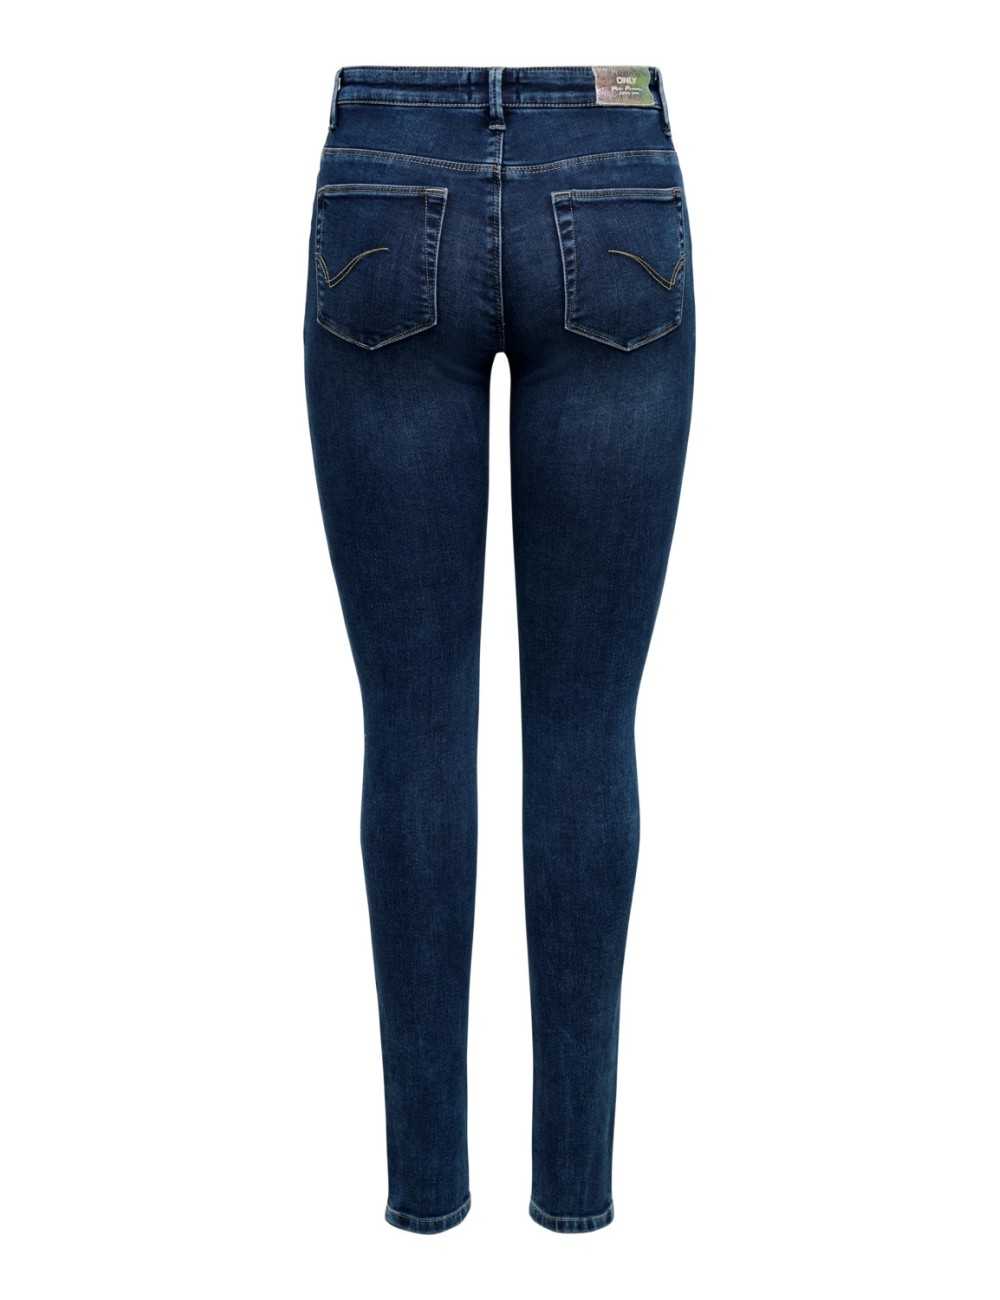 Only Jeans Carmen Life Skinny fit donna blu - Jeans & Pantaloni Donna